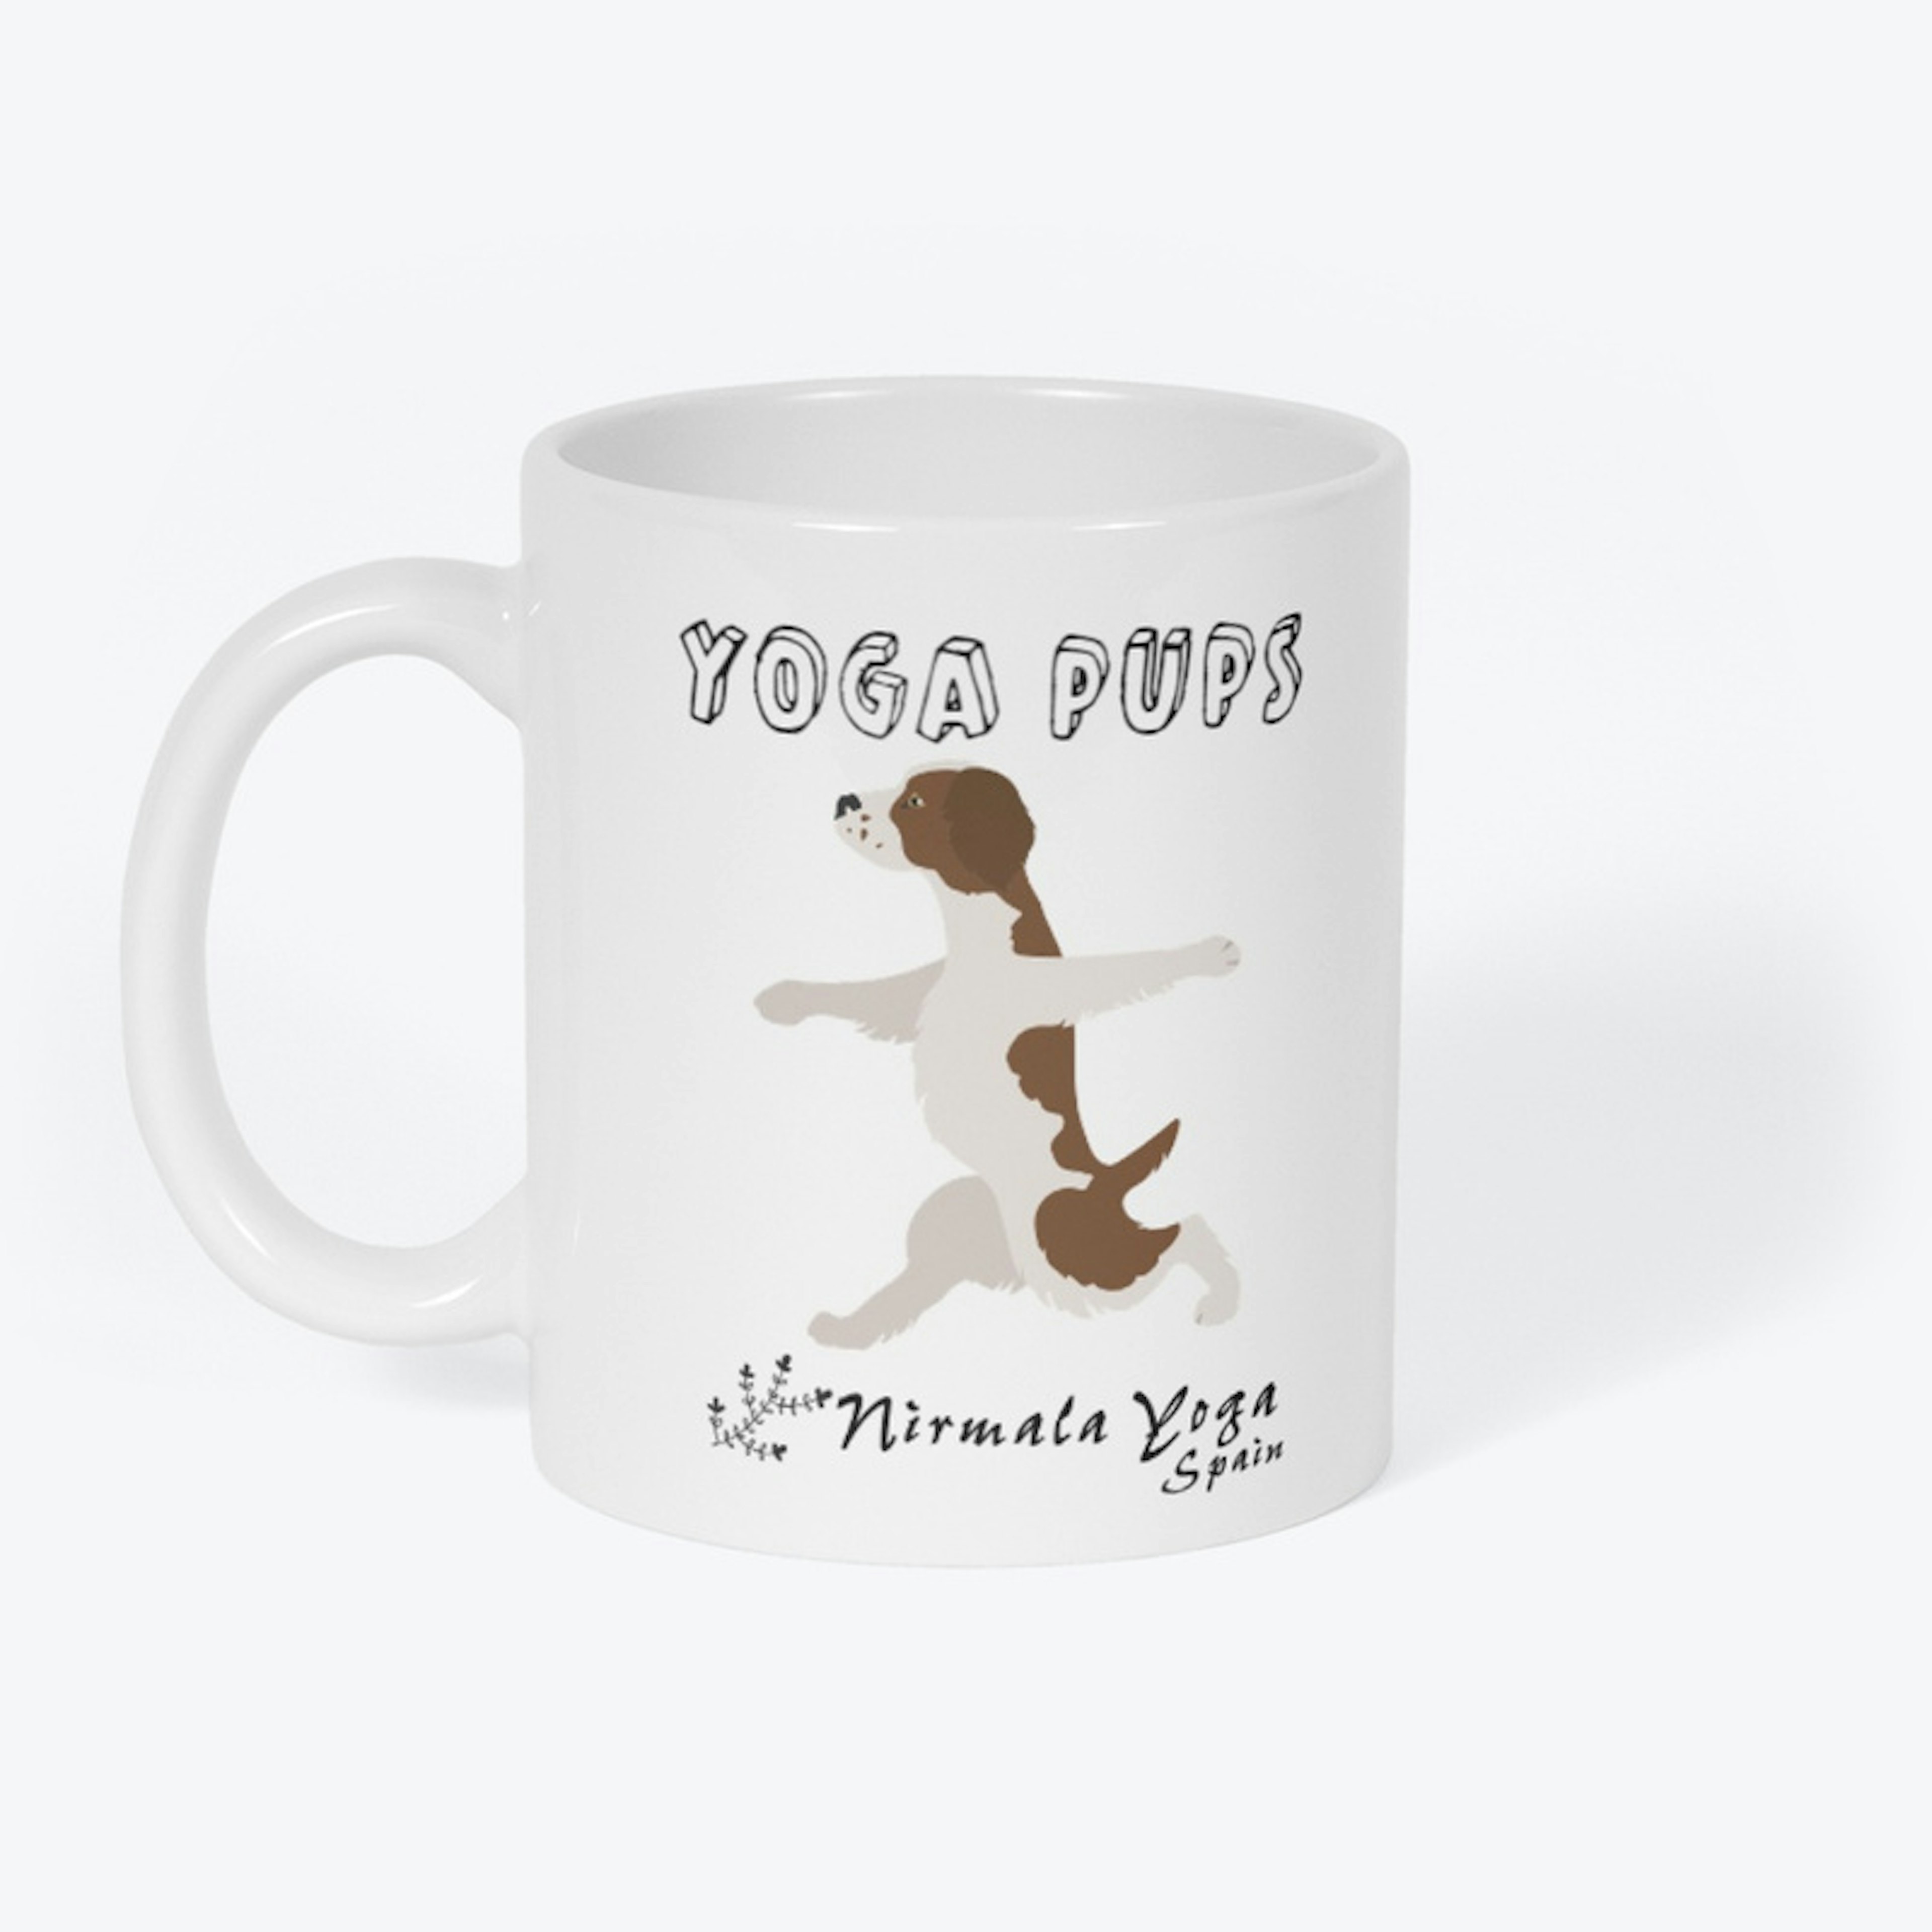 Spaniel/Pointer "Yoga Pups" Mug